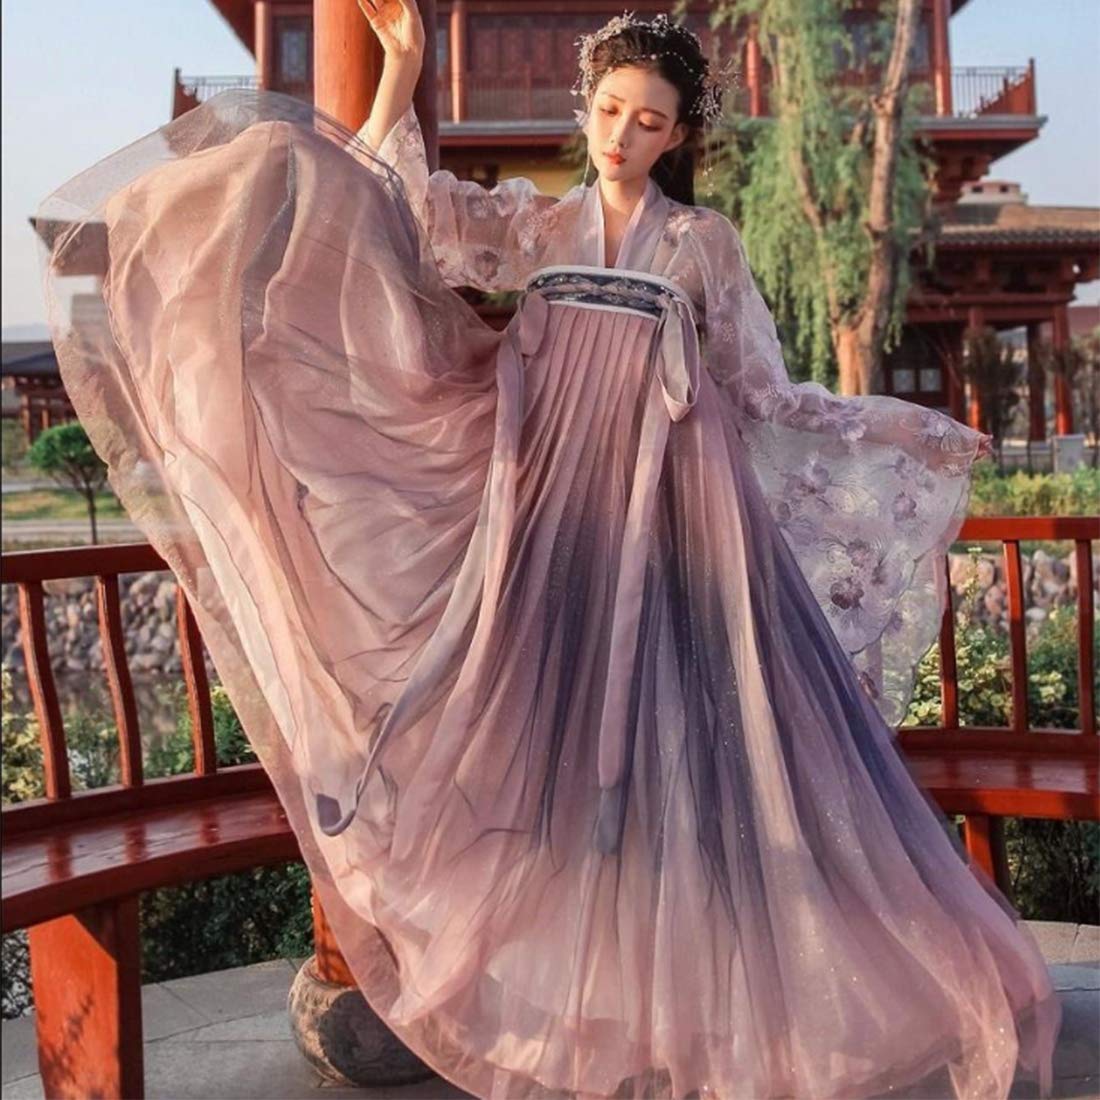 Seciie Chinesischer Hanfu, antikes Trachtenkostüm, Hanfu-Kleider, Damenkleidung, Tang-Anzug für Bühnenaufführungen, Cosplay – XS